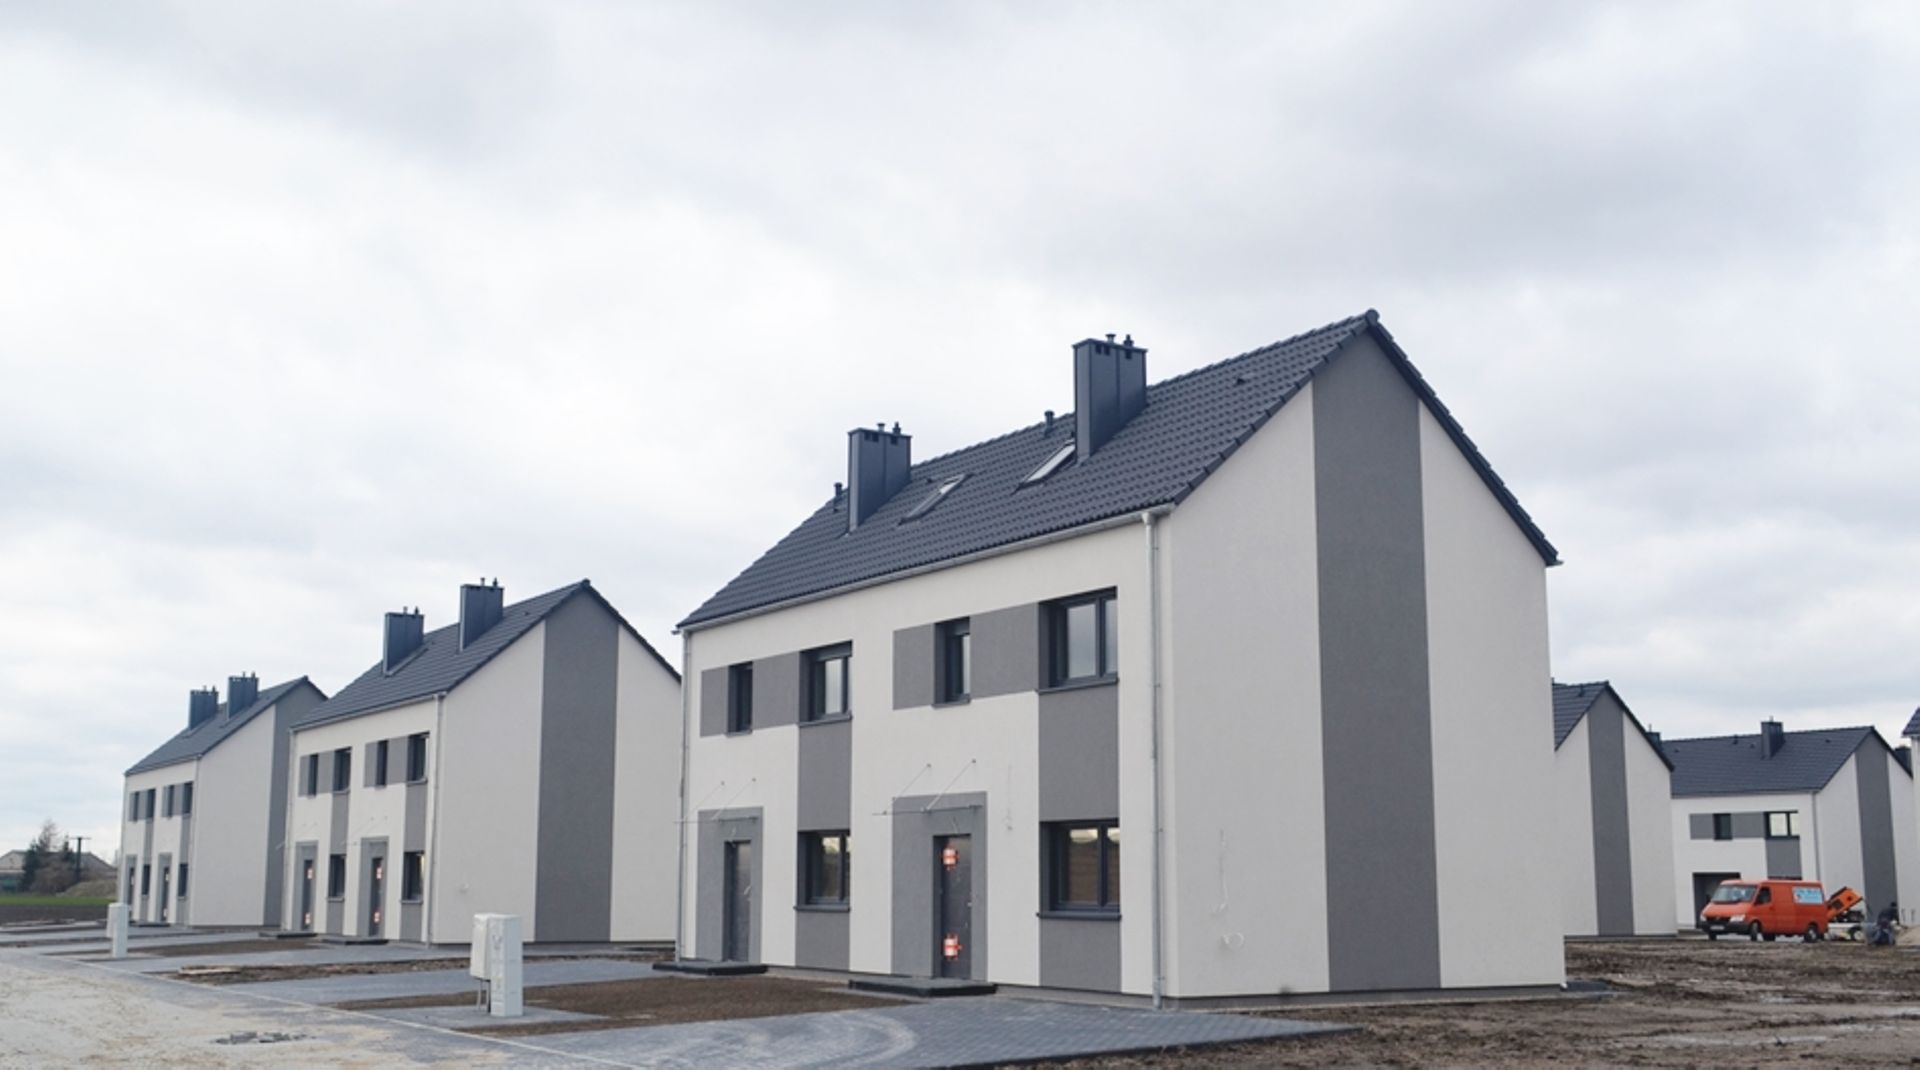  Pierwsze domy w Zielonych Rabowicach pod Poznaniem gotowe